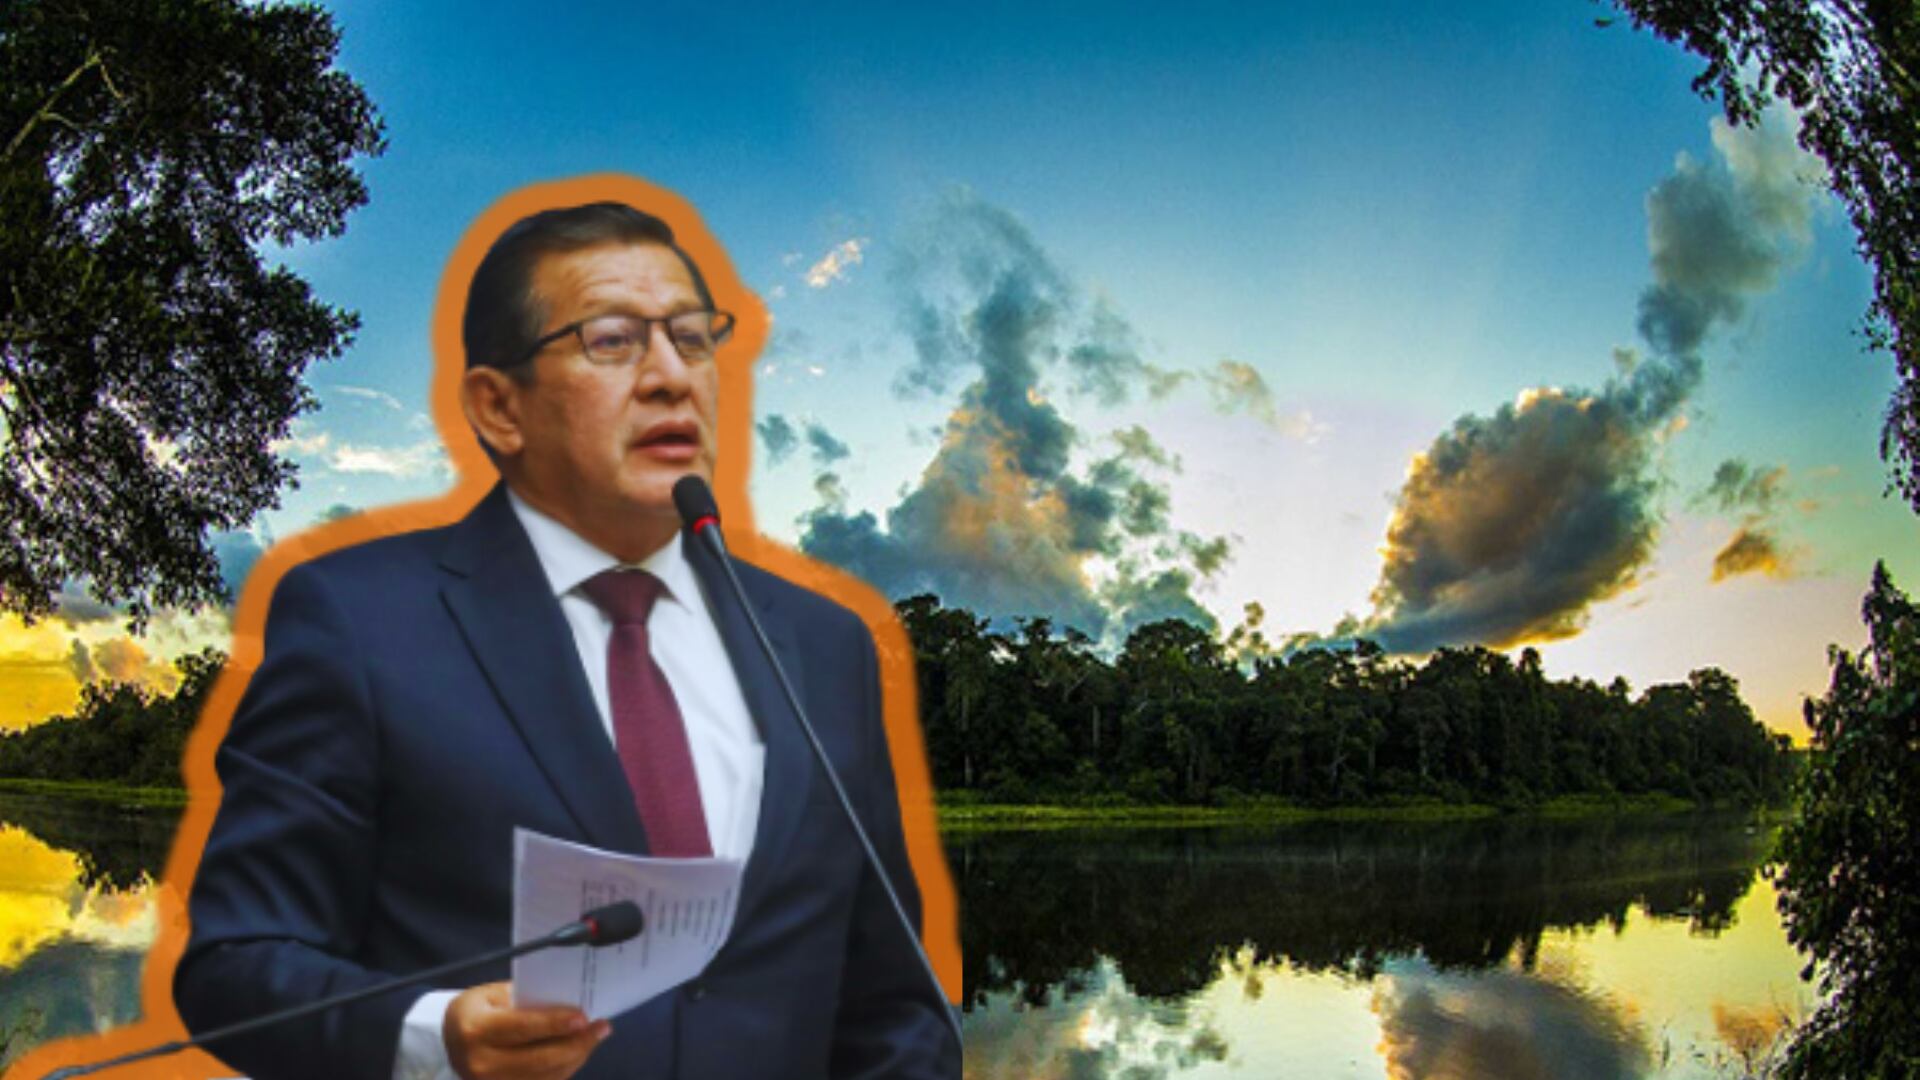 Parlamentario de Perú brinda discurso en las inmediaciones del Congreso de la República. Al fondo, se admira el Parque Nacional del Manu.